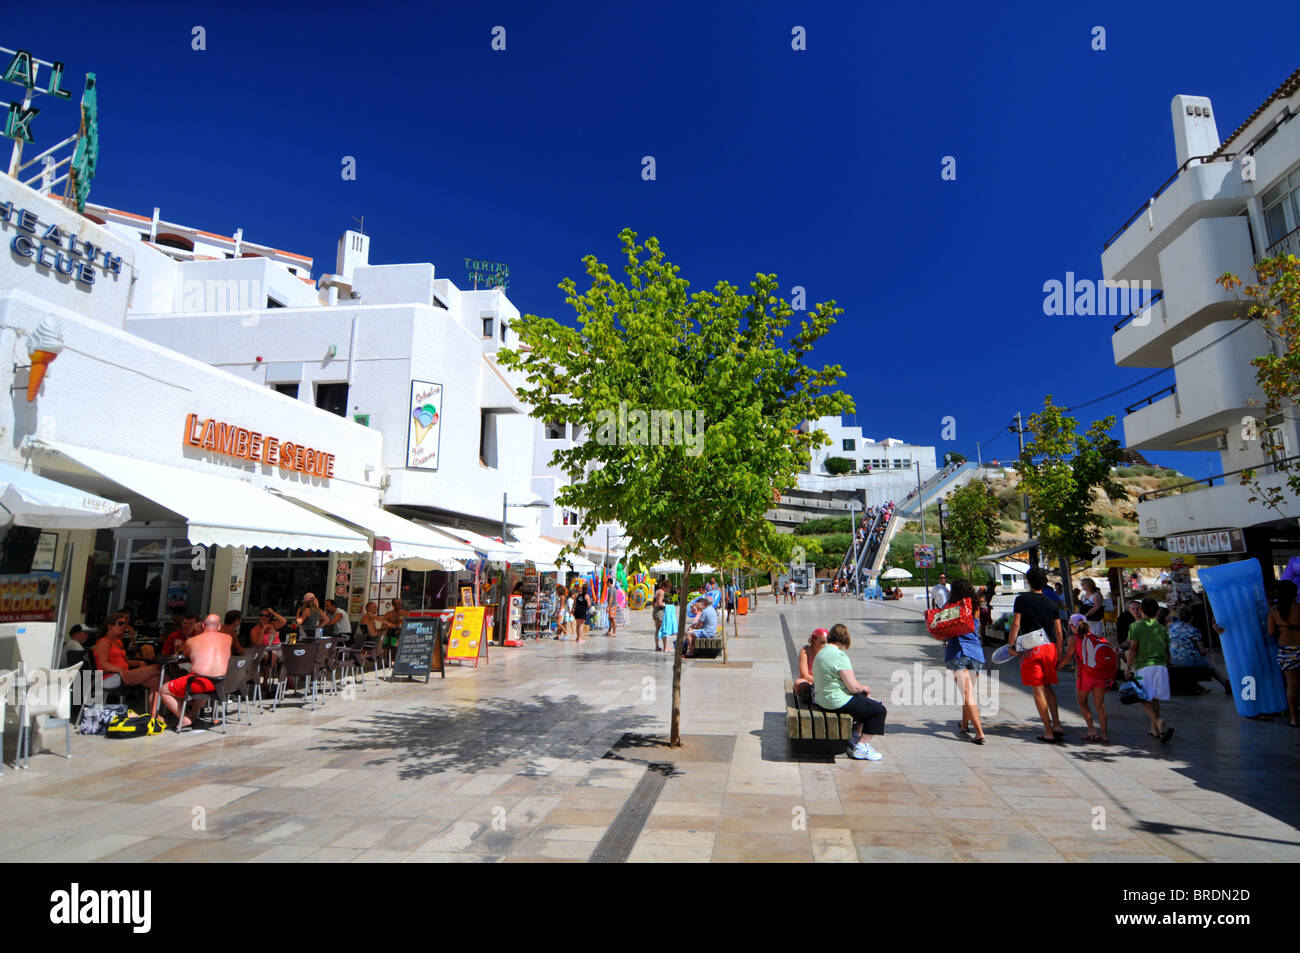 Albufeira resort, The Algarve, Portugal Stock Photo